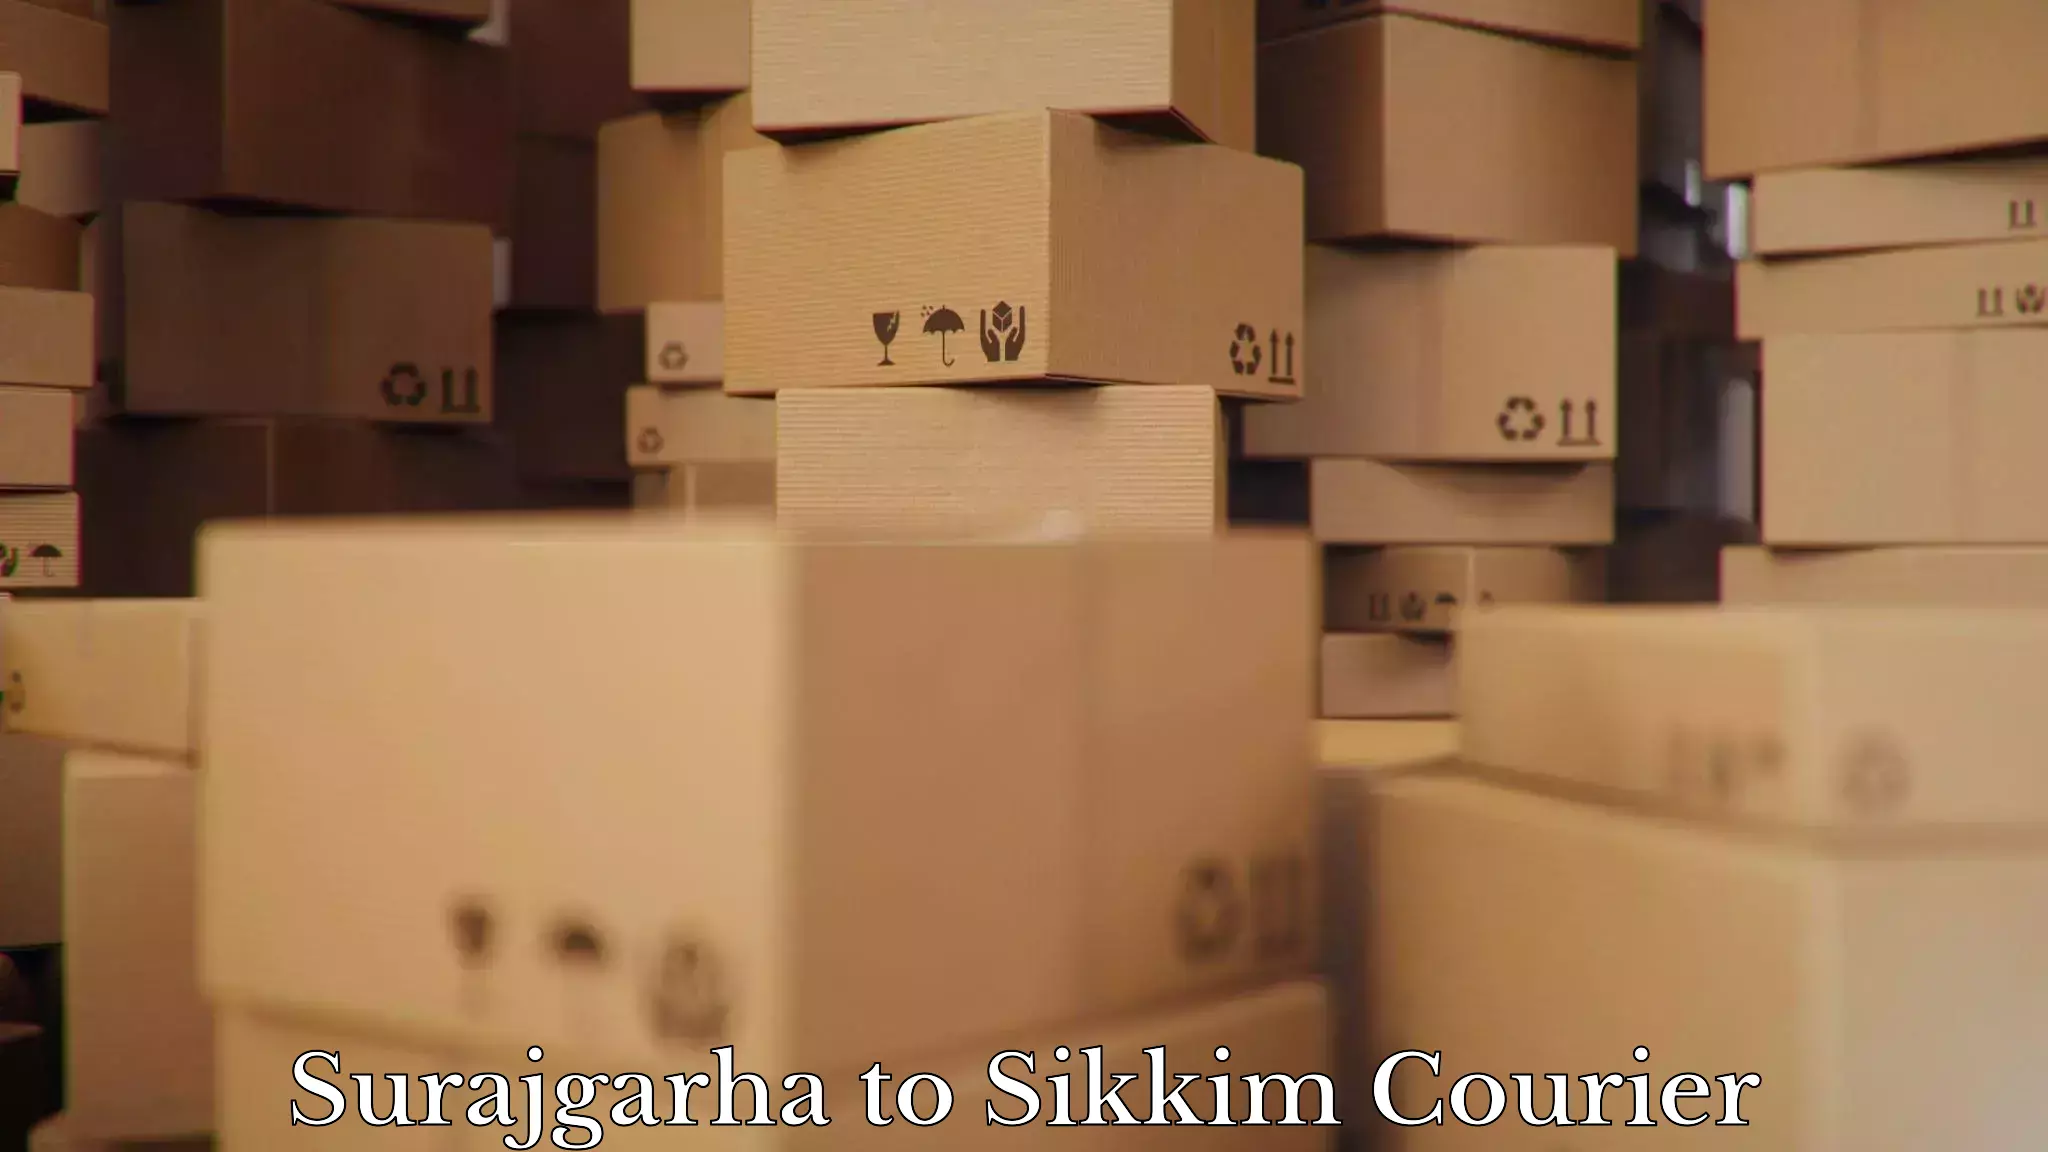 Efficient relocation services Surajgarha to Sikkim